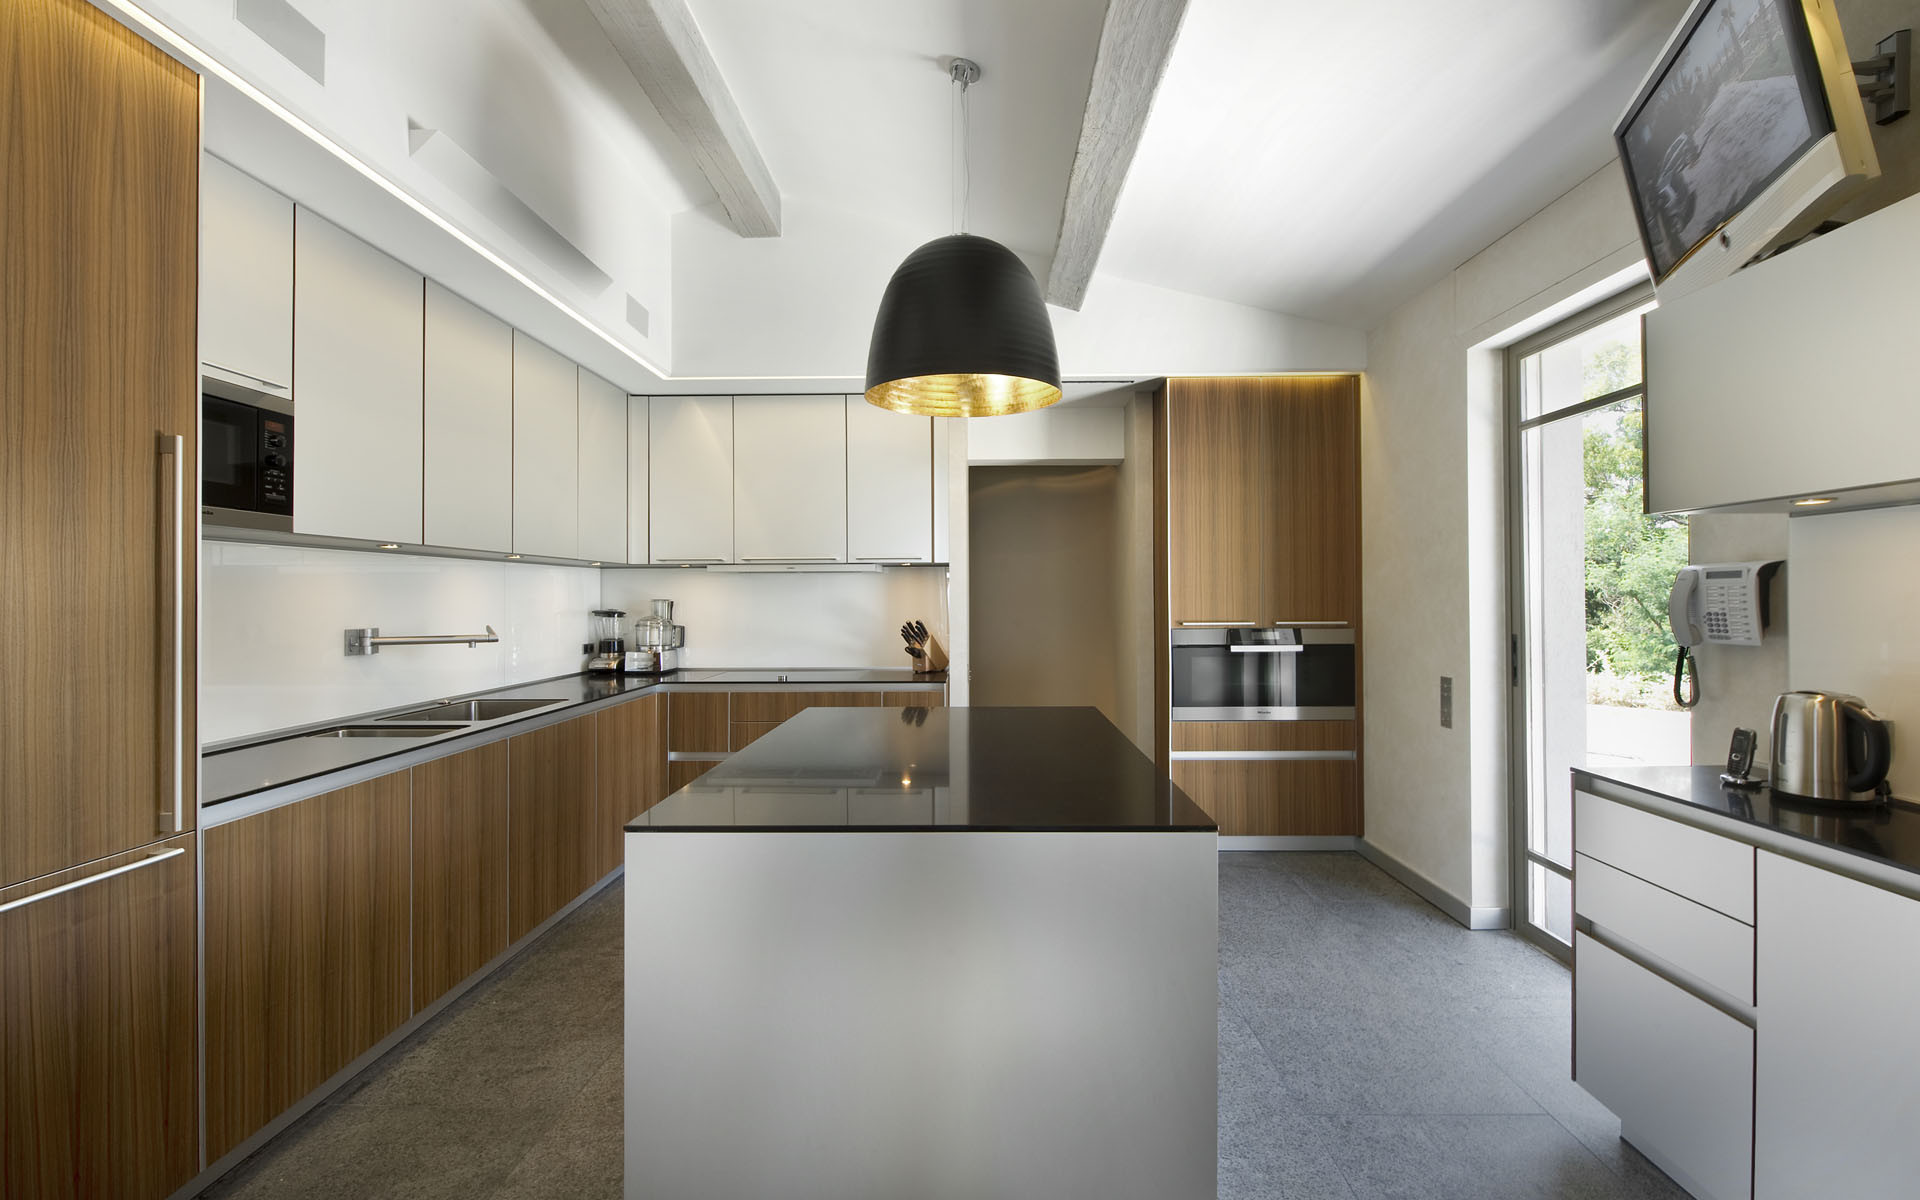 Kitchen Interior Design Ideas
 25 AMAZING MINIMALIST KITCHEN DESIGN IDEAS